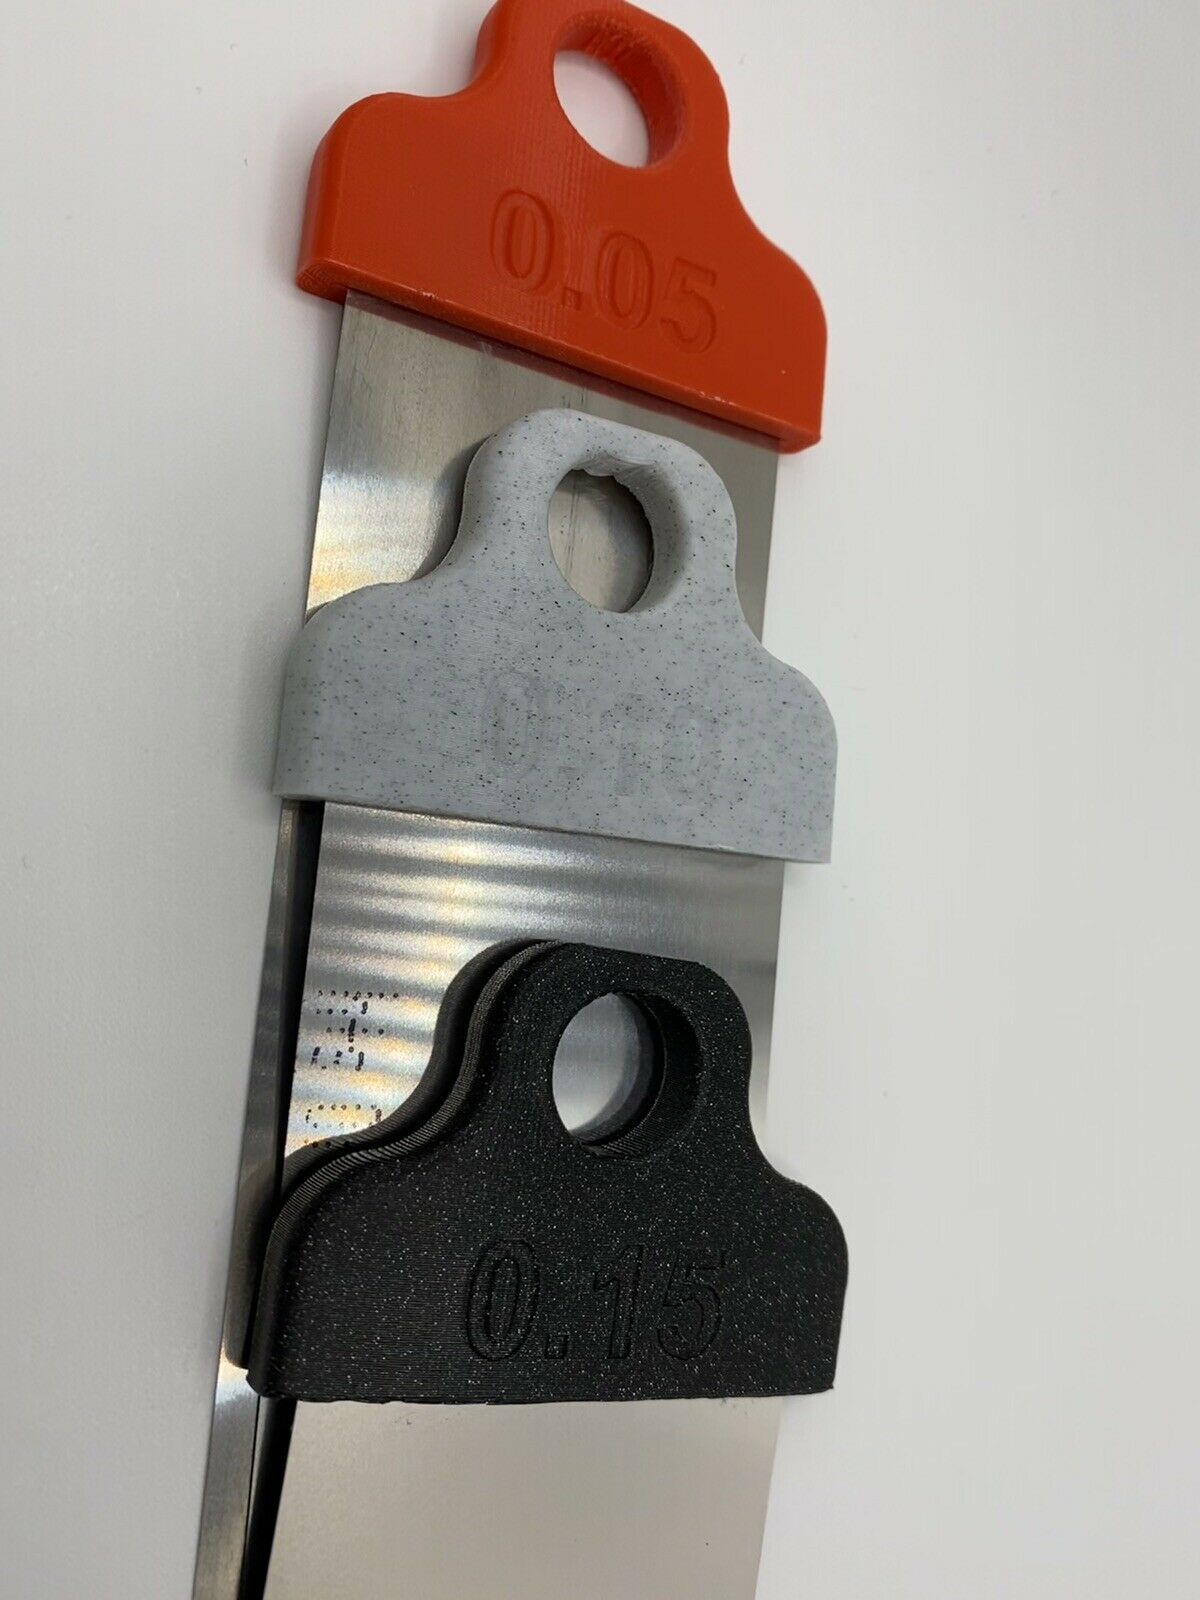 Levelfolie Metallfolie 3D-Drucker-Zubehör Set 0,05-0,15mm